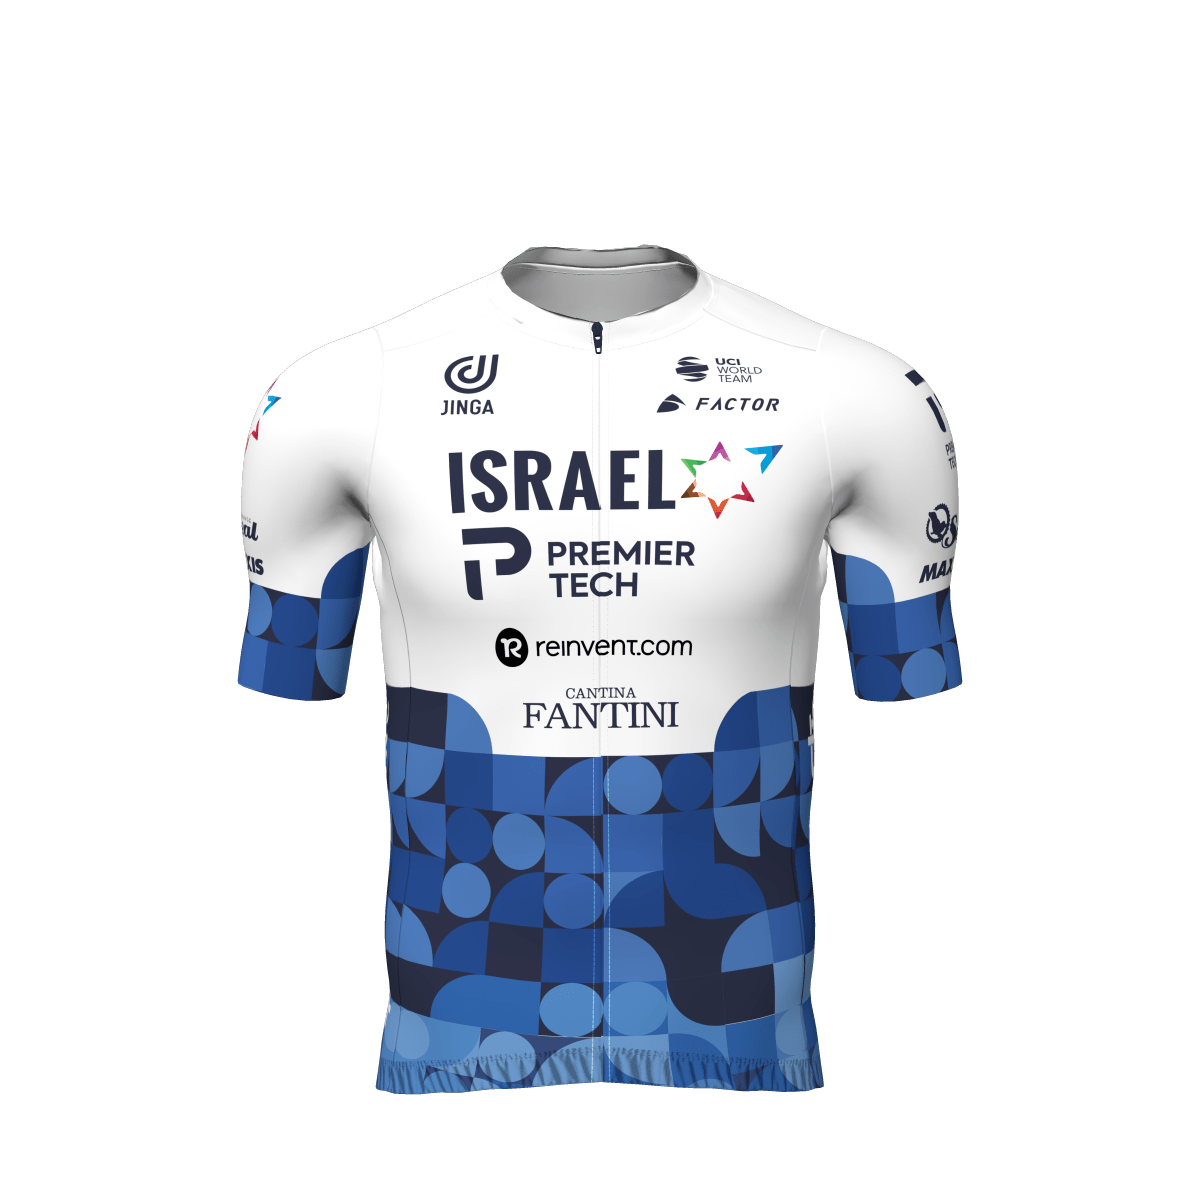 Israel – Premier Tech jersey - front